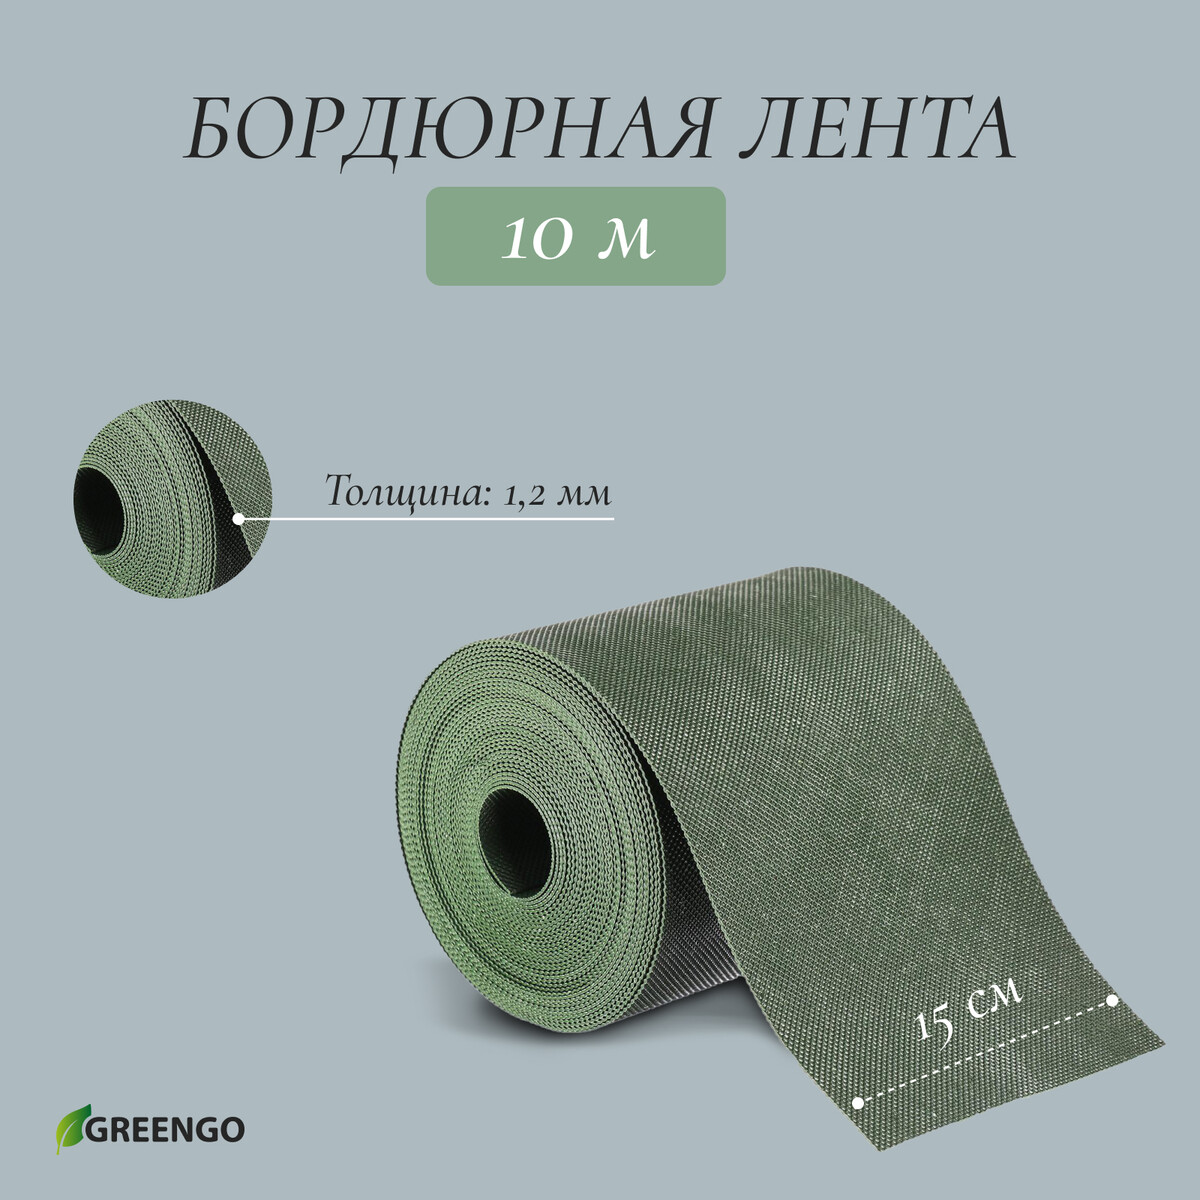 Лента бордюрная, 0.15 × 10 м, толщина 1.2 мм, пластиковая, зеленая, greengo лента бордюрная 0 15 × 9 м толщина 0 6 мм пластиковая гофра зеленая greengo